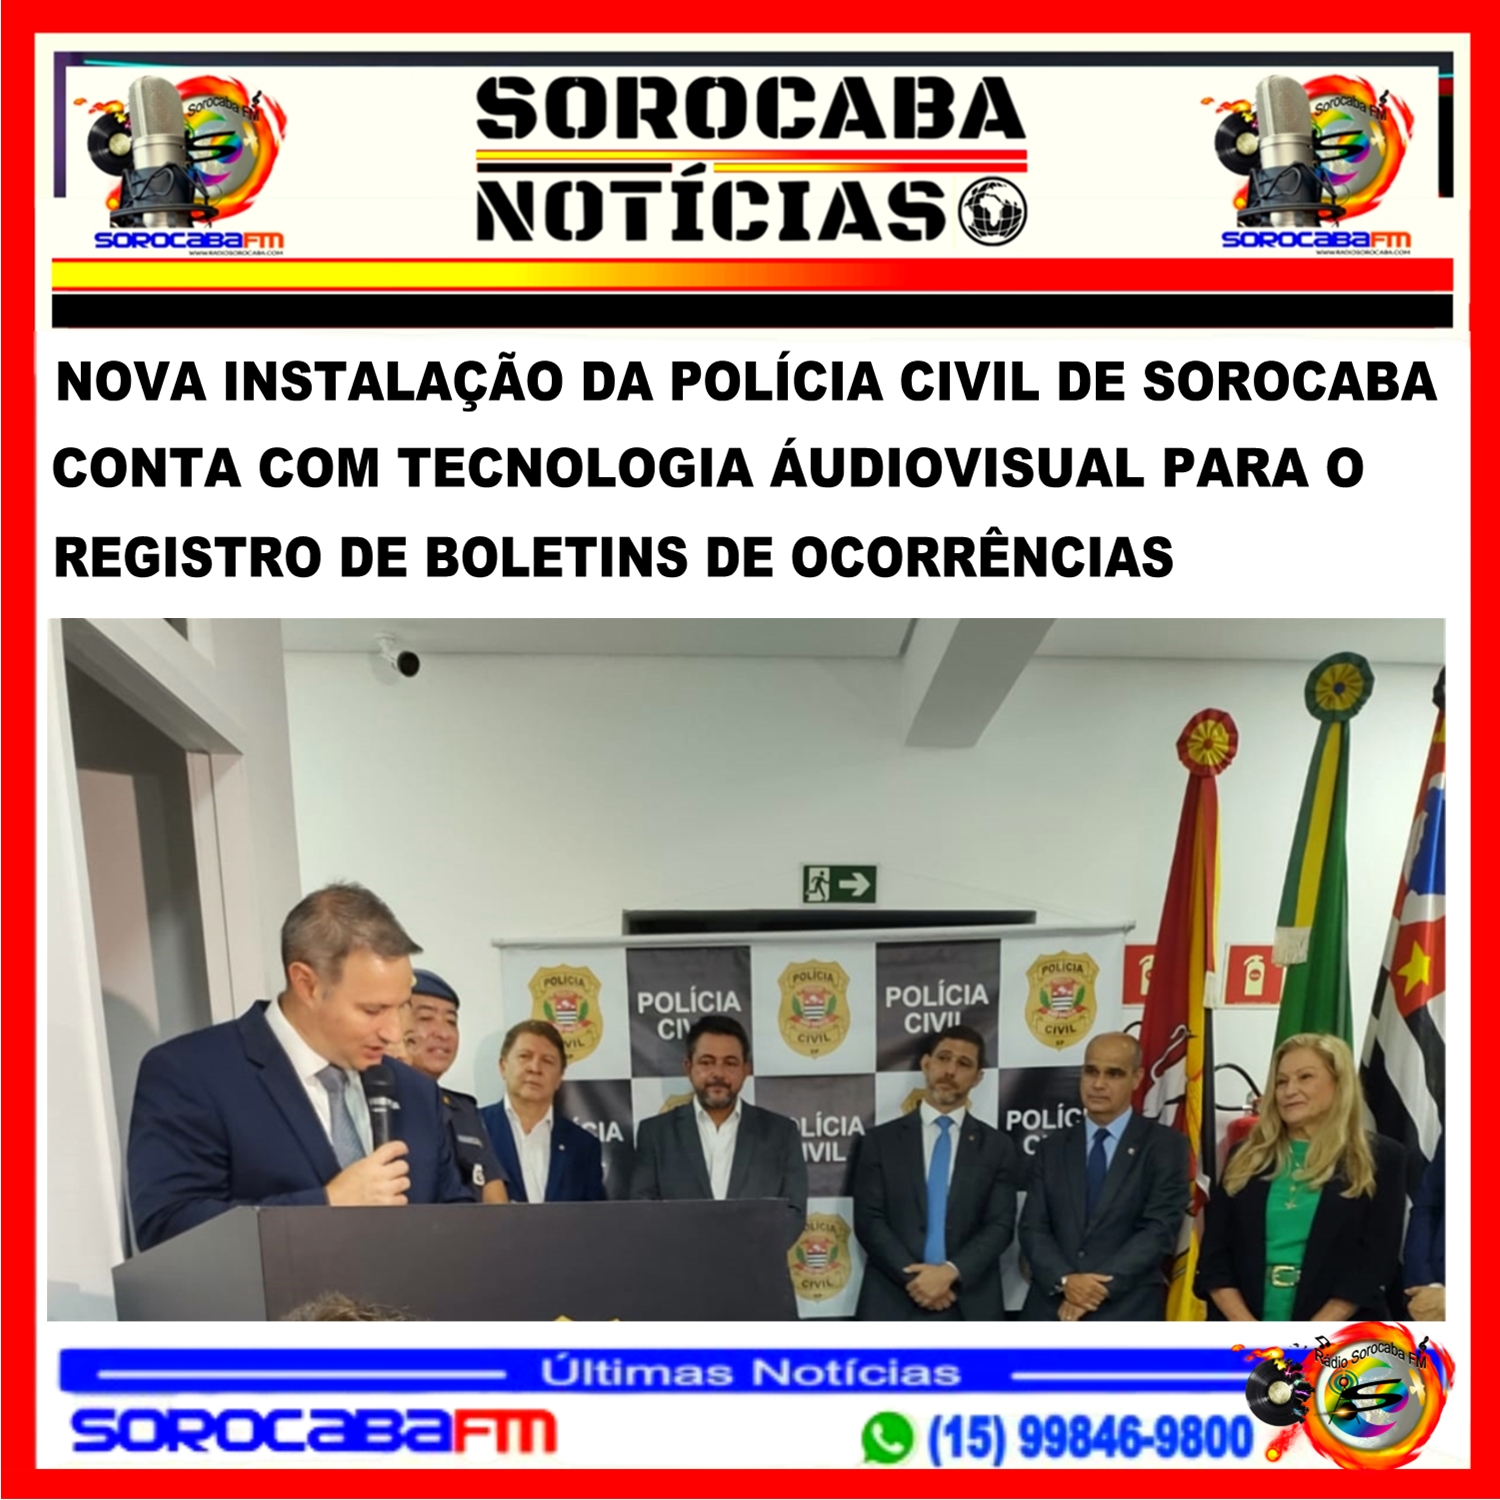 NOVA INSTALAÇÃO DA POLÍCIA CIVIL DE SOROCABA CONTA COM TECNOLOGIA AUDIOVISUAL PARA O REGISTRO DE BOLETINS DE OCORRÊNCIAS